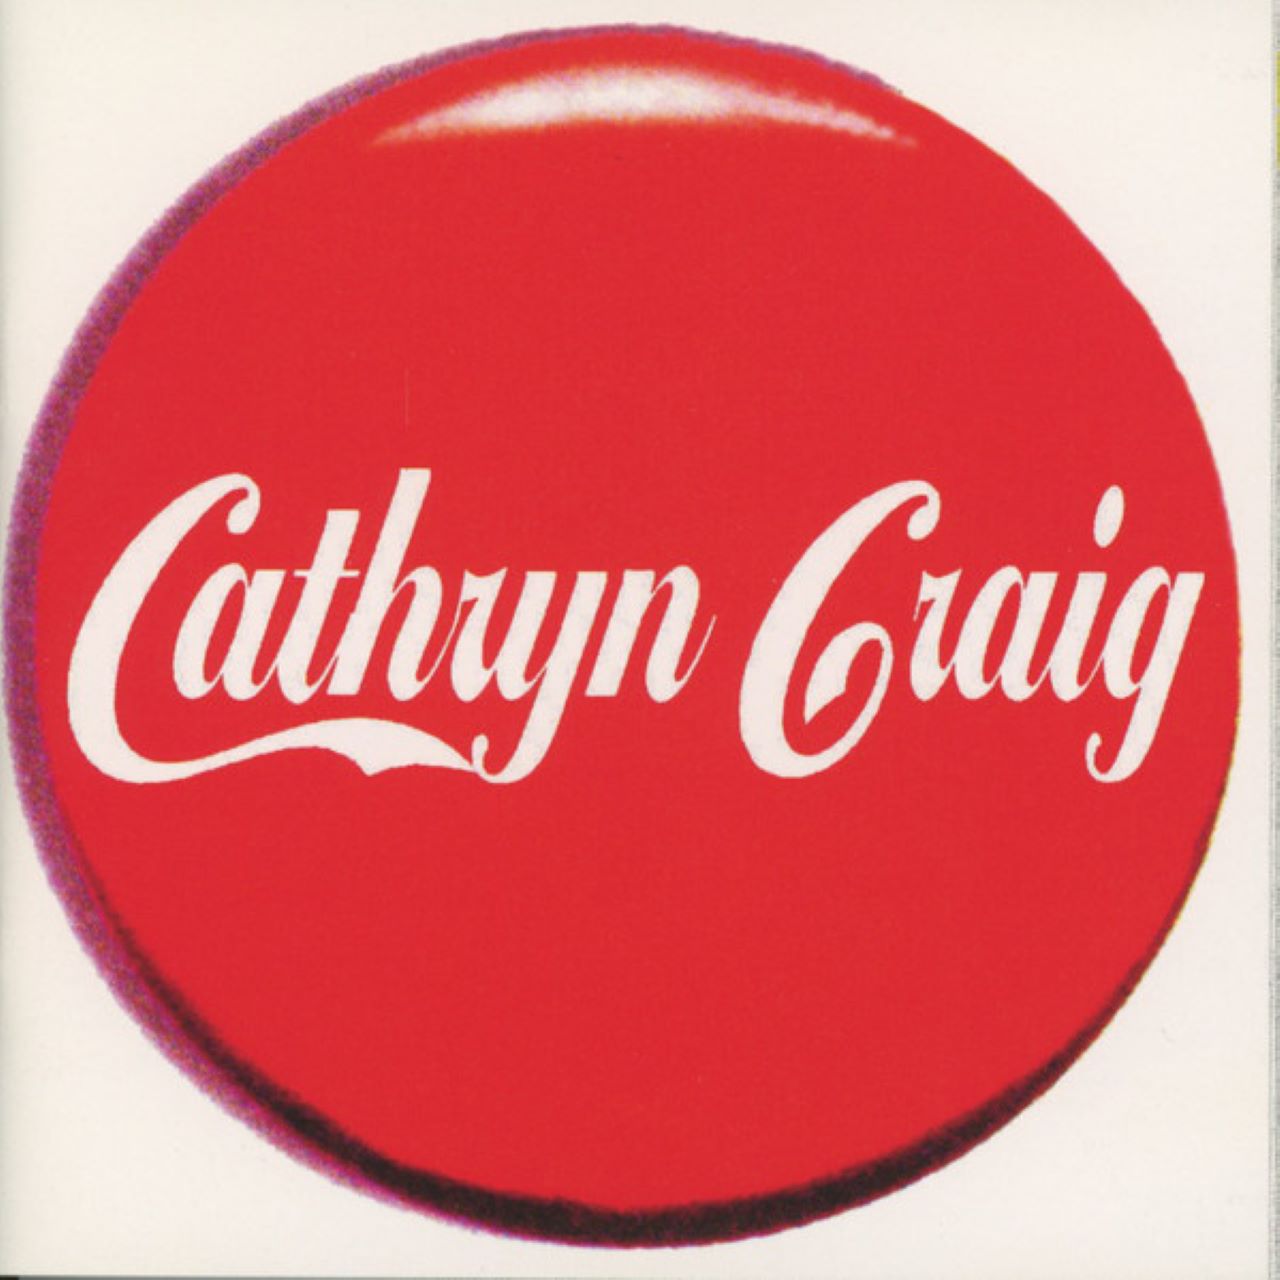 Cathryn Craig - Cathryn Craig cover album